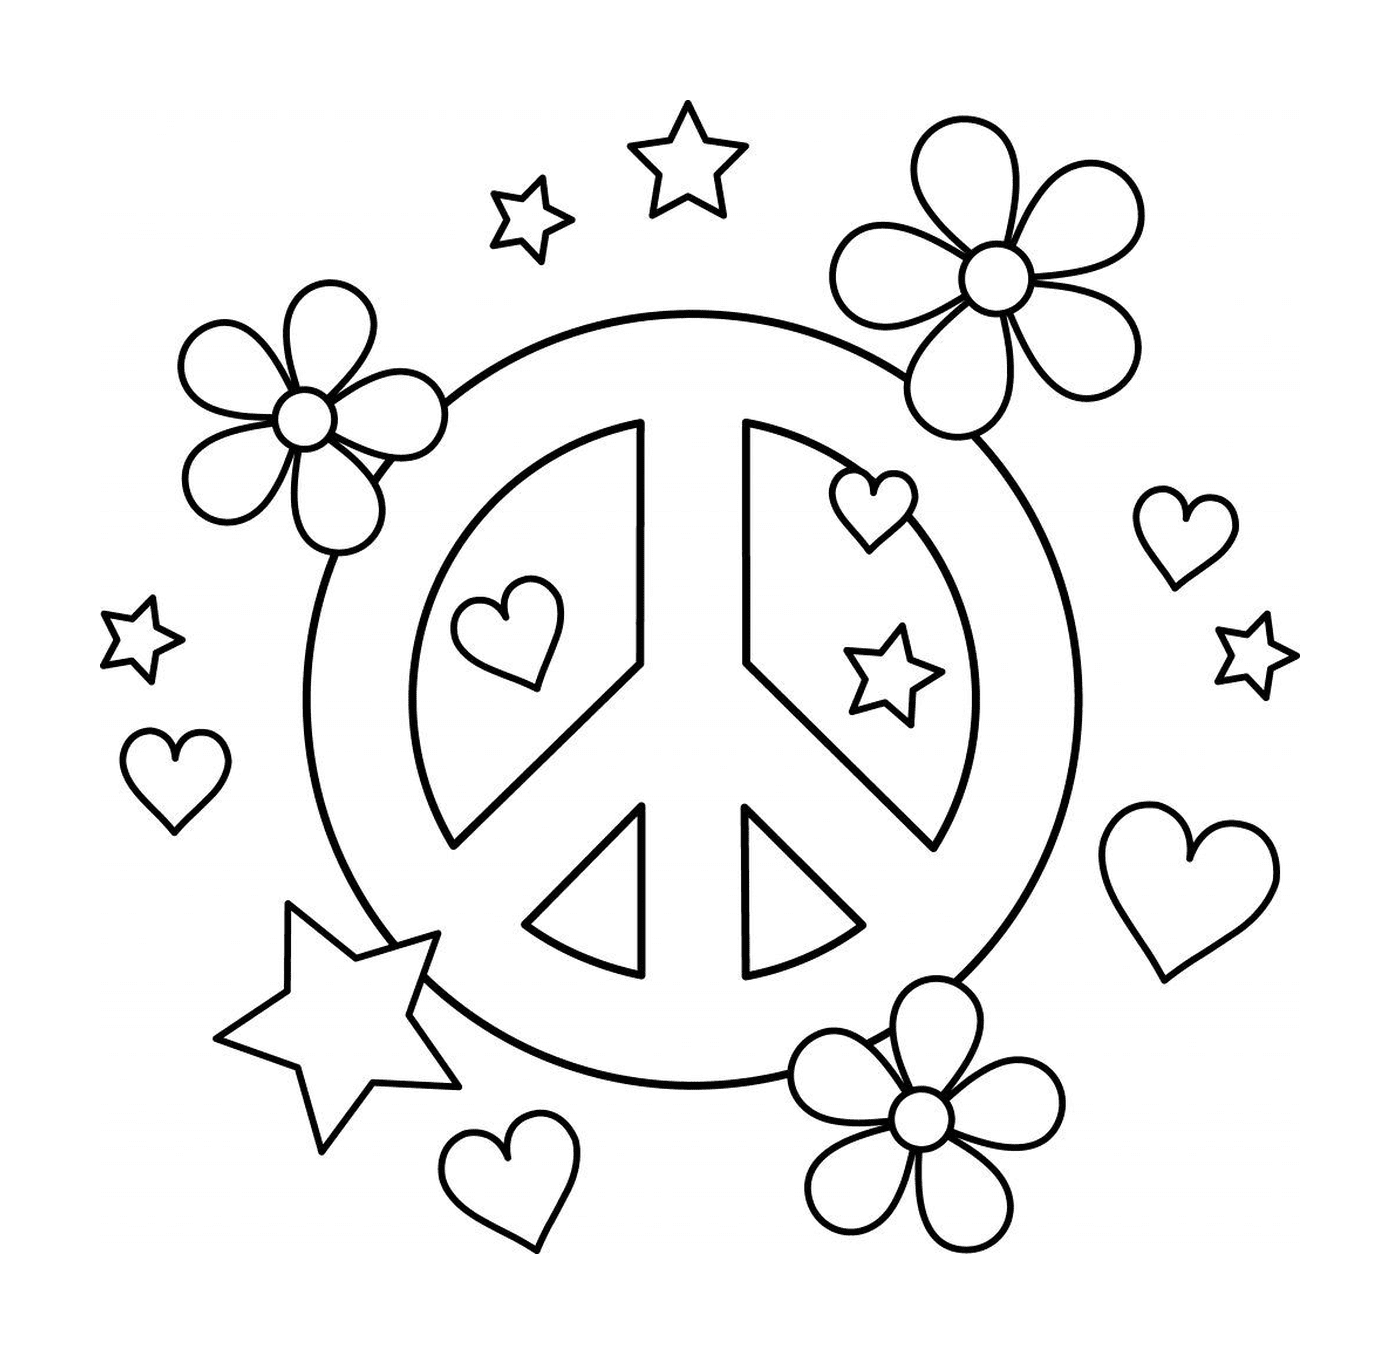  Símbolo de paz con corazones y flores 